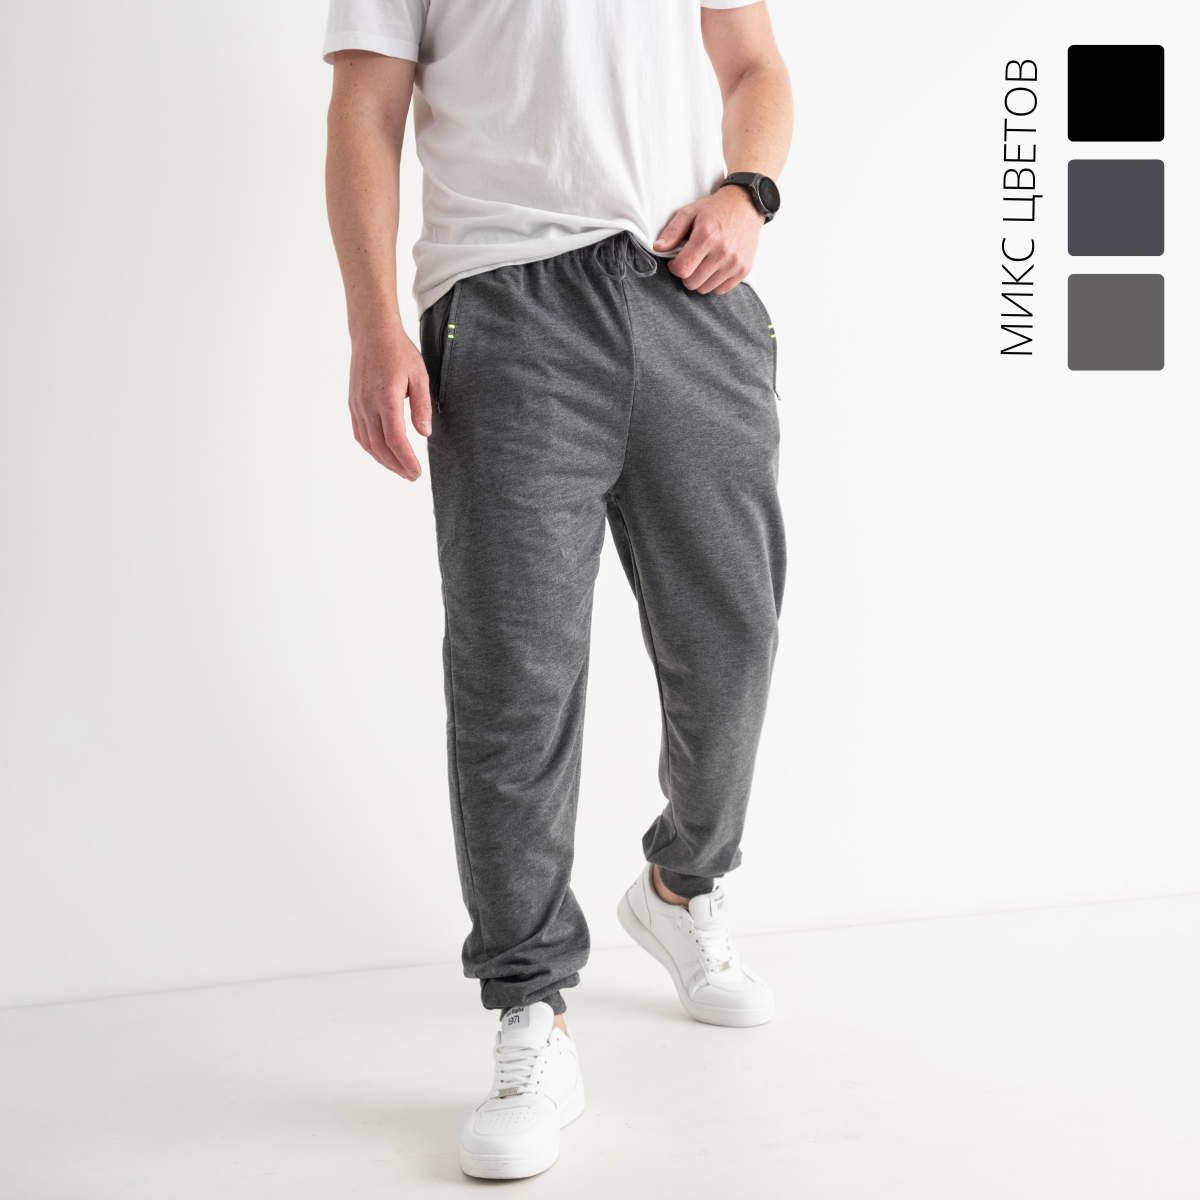 41298 МИКС ЦВЕТОВ  спортивные штаны мужские на манжете (6 ед.размеры: M.L.XL.2XL.3XL.4XL)